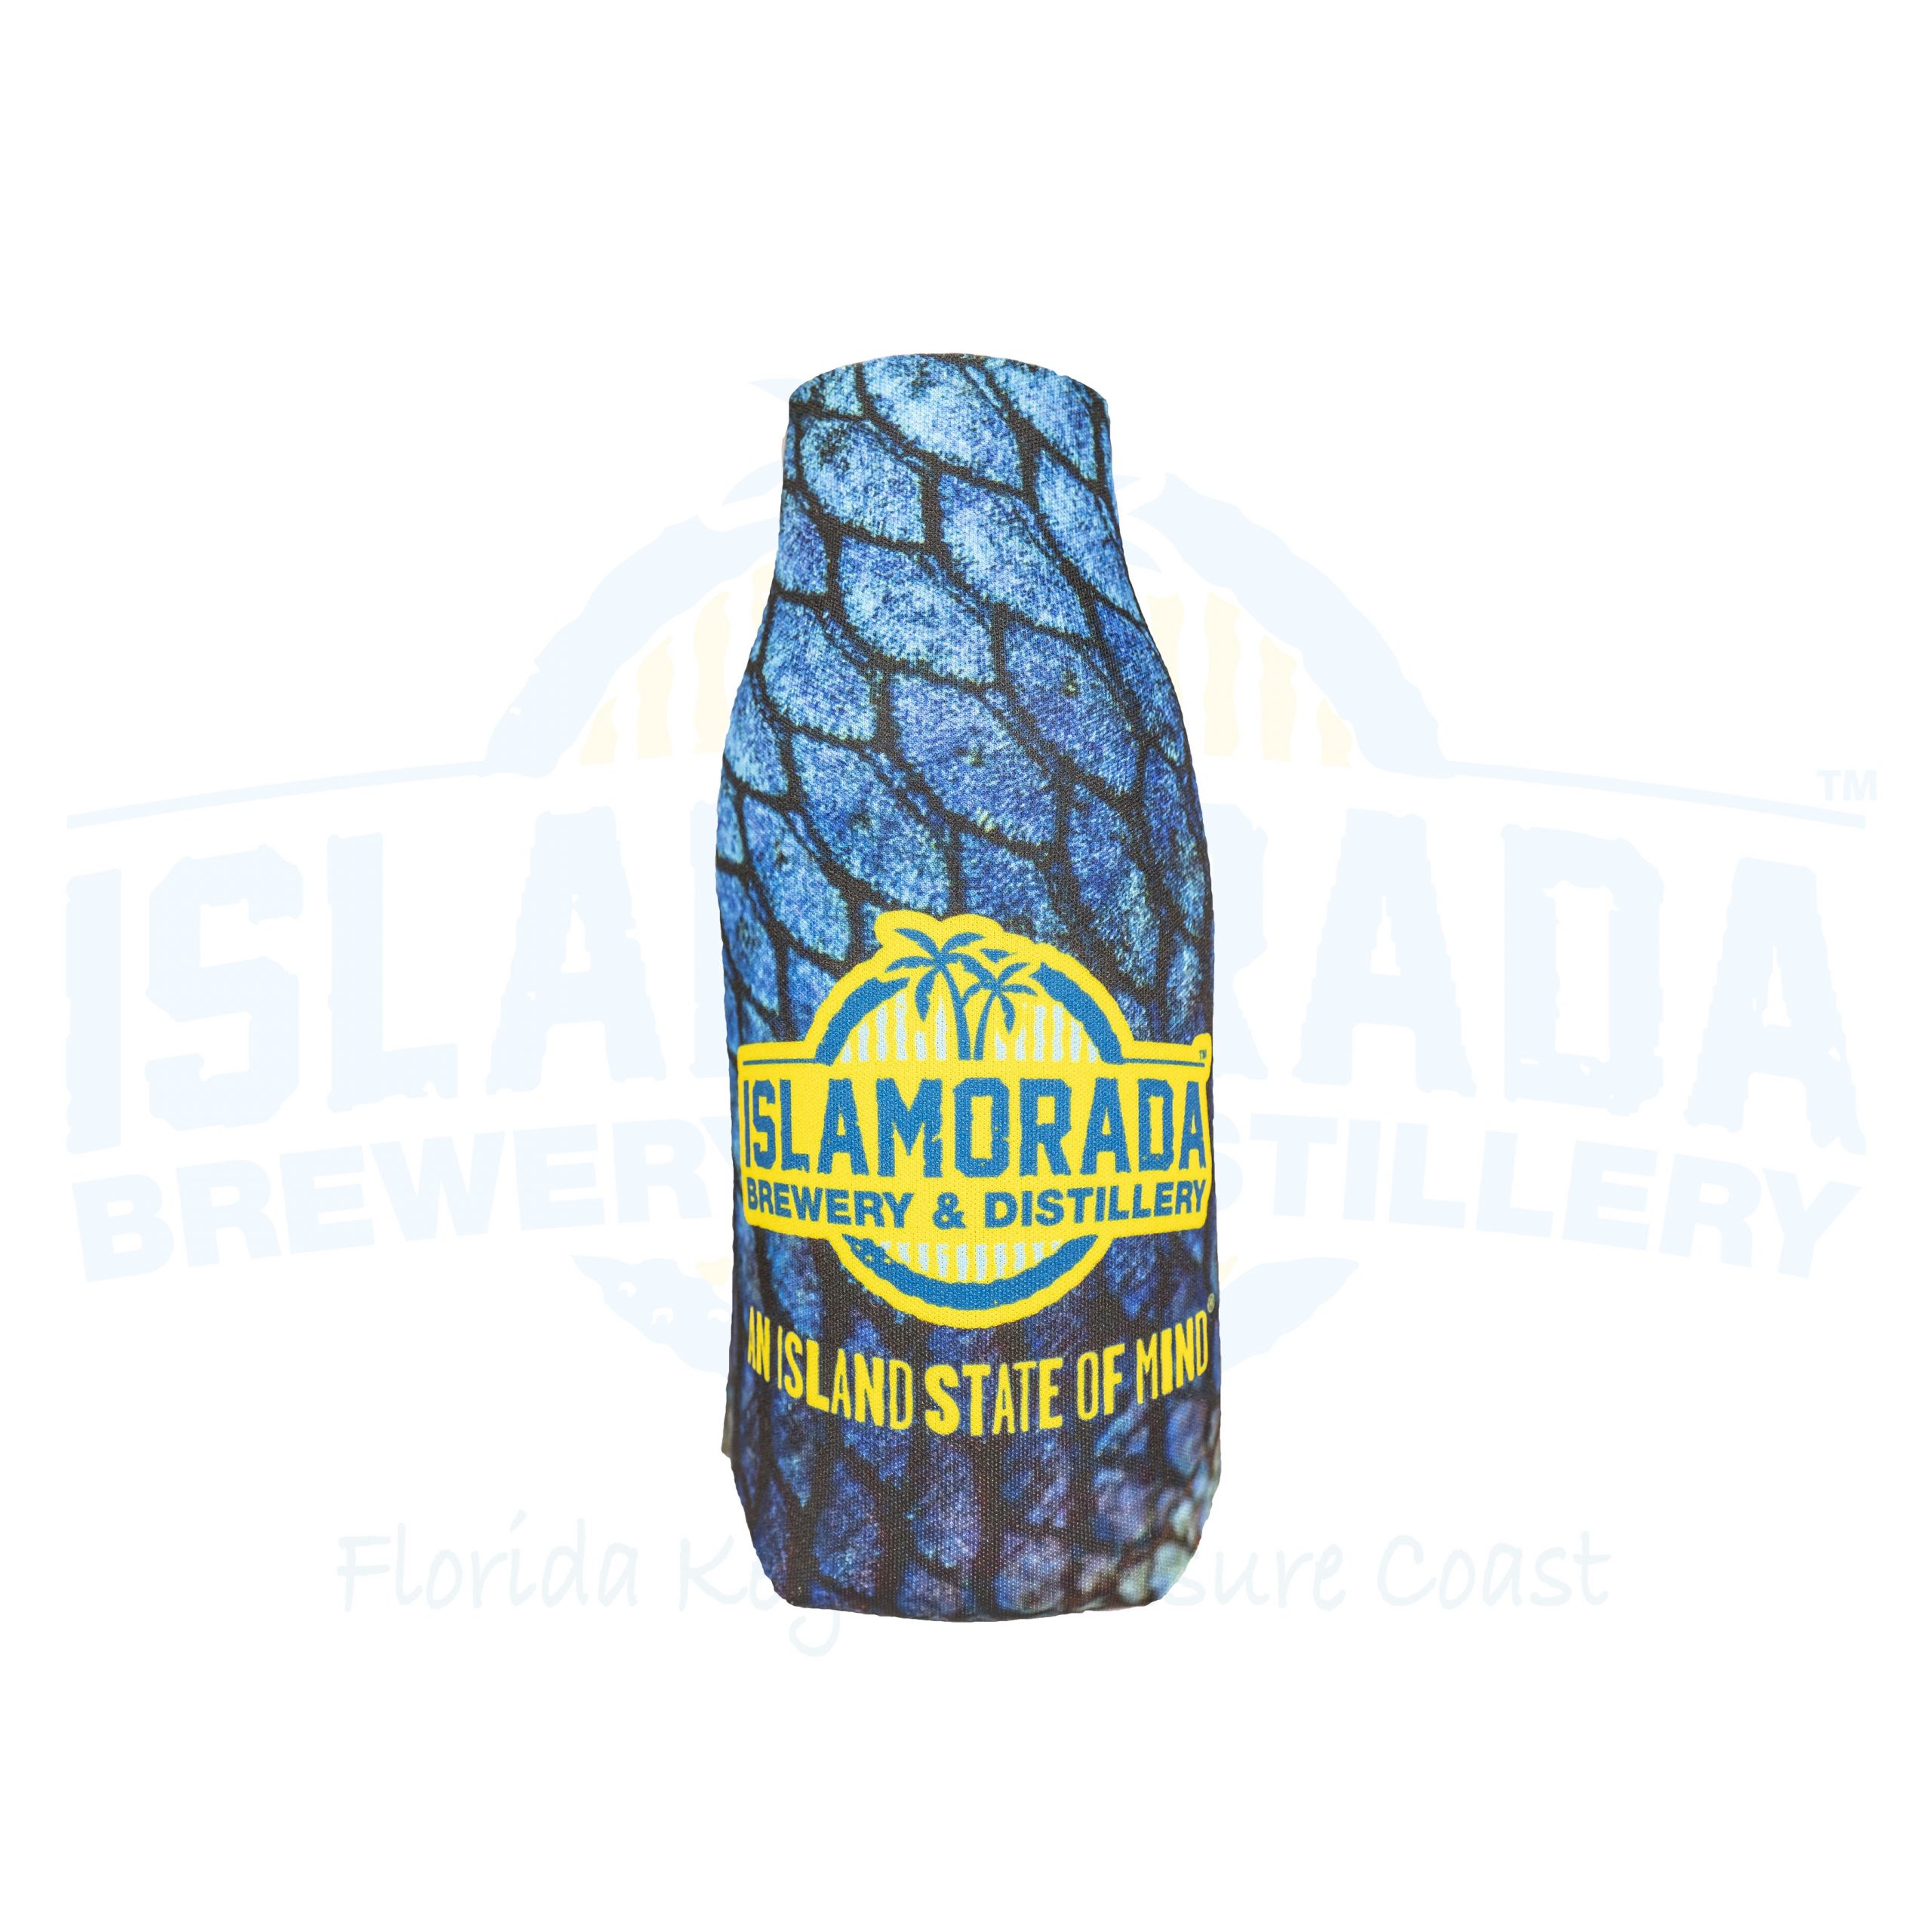 Mermaid Scales Beer Bottle Koozie